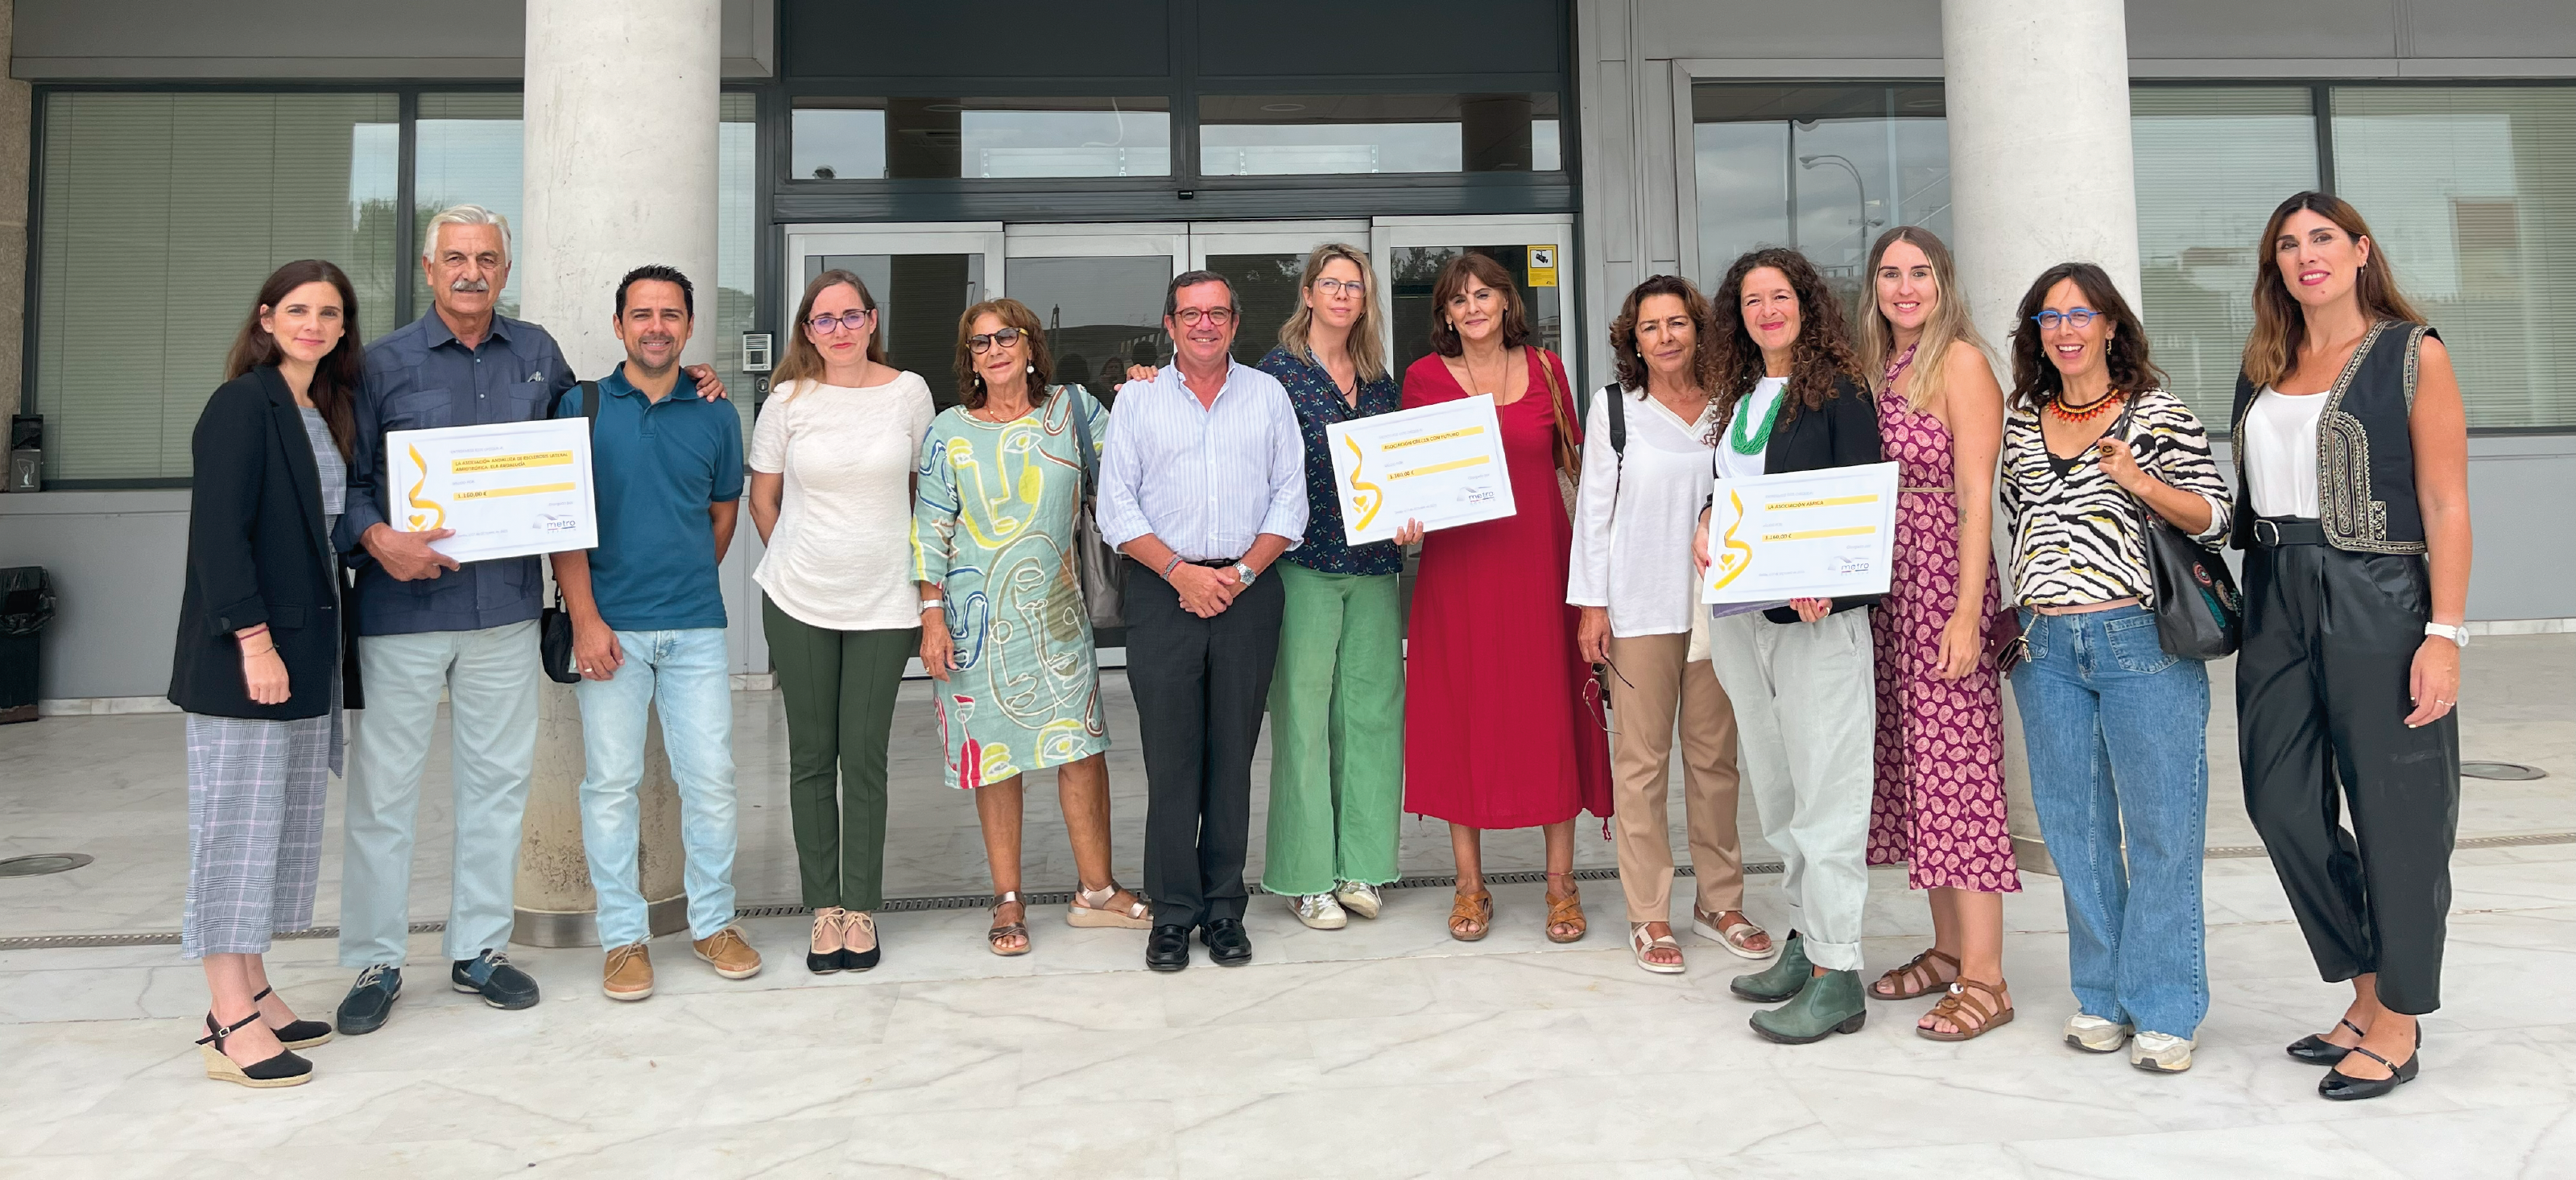 Metro de Sevilla ha entregado hoy las donaciones del proyecto “Euro Solidario” a la Asociación Andaluza de Esclerosis Lateral Amiotrófica (ELA Andalucía), Crecer con futuro y la Asociación Amiga